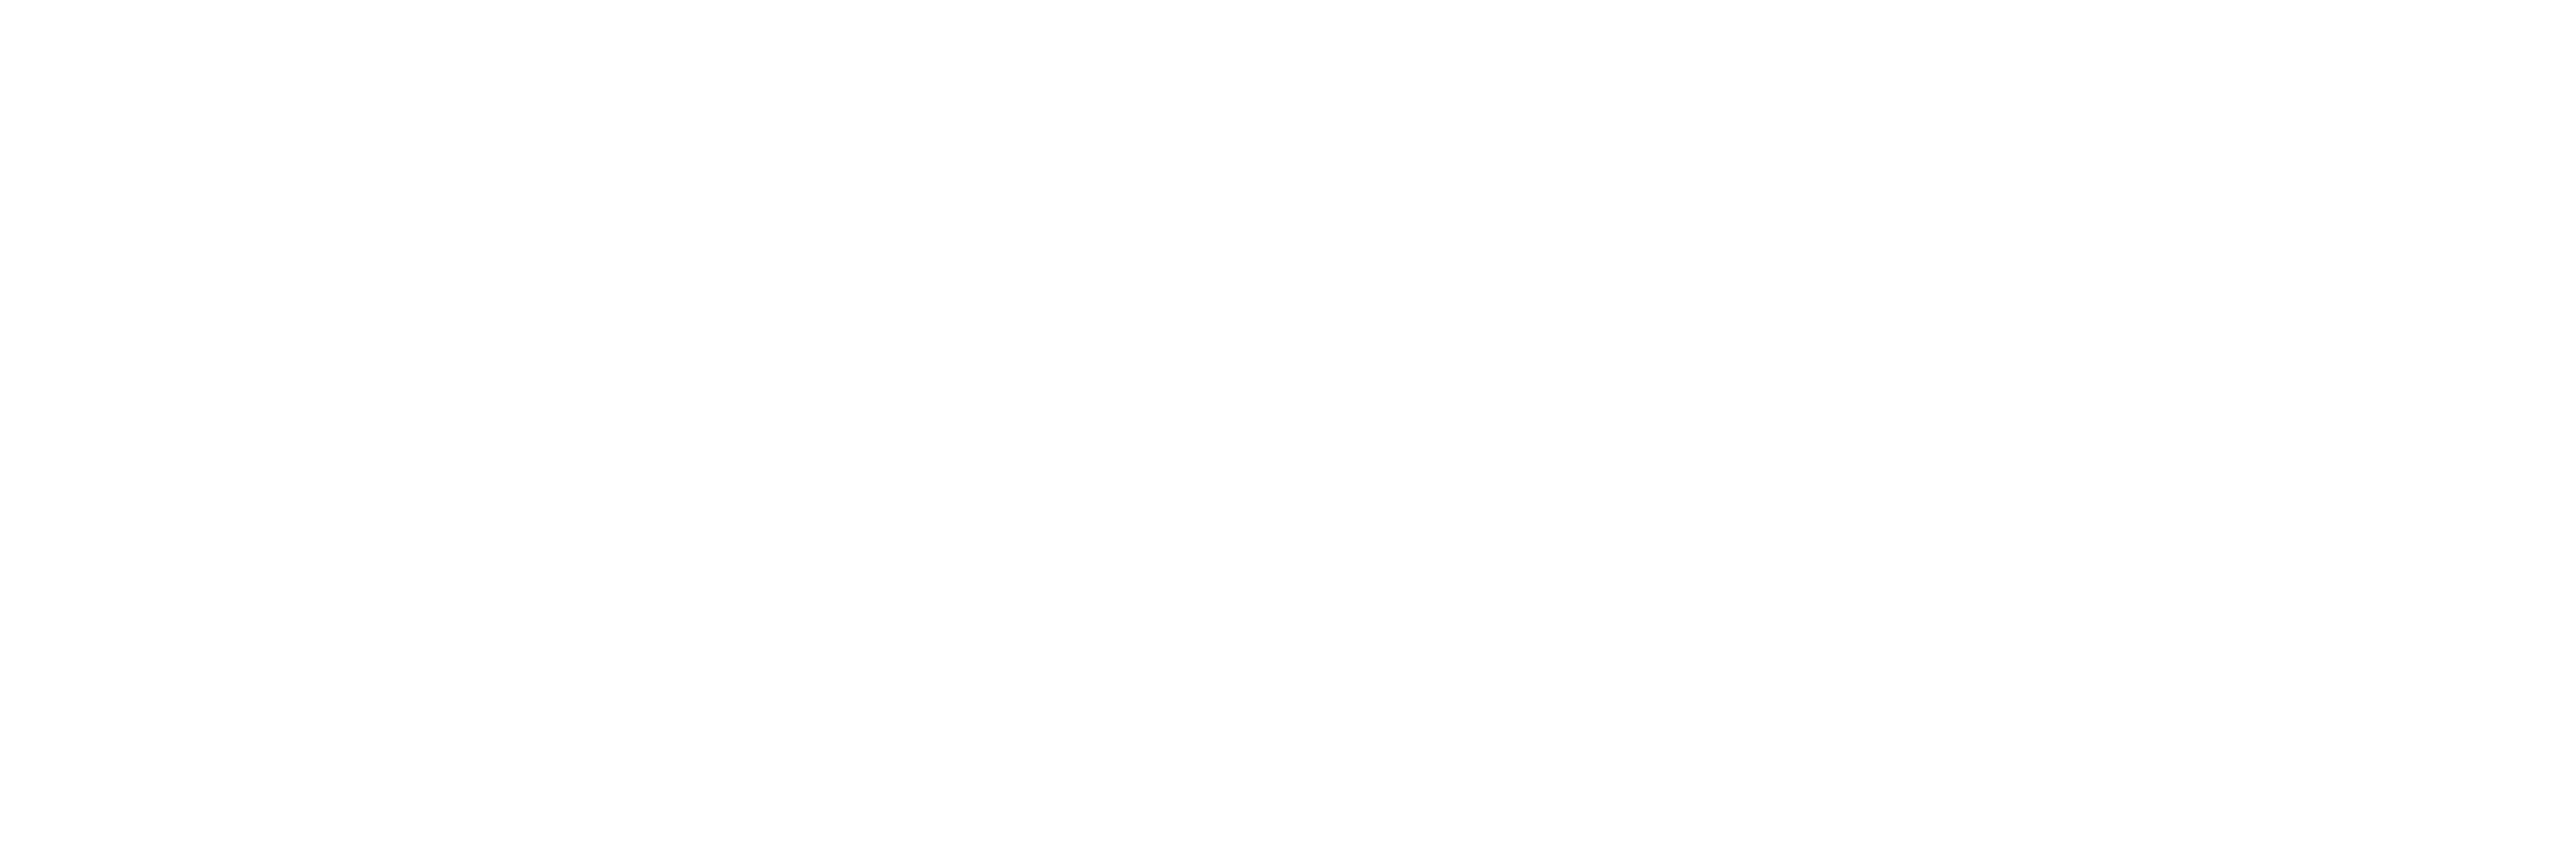 TBN logo - White